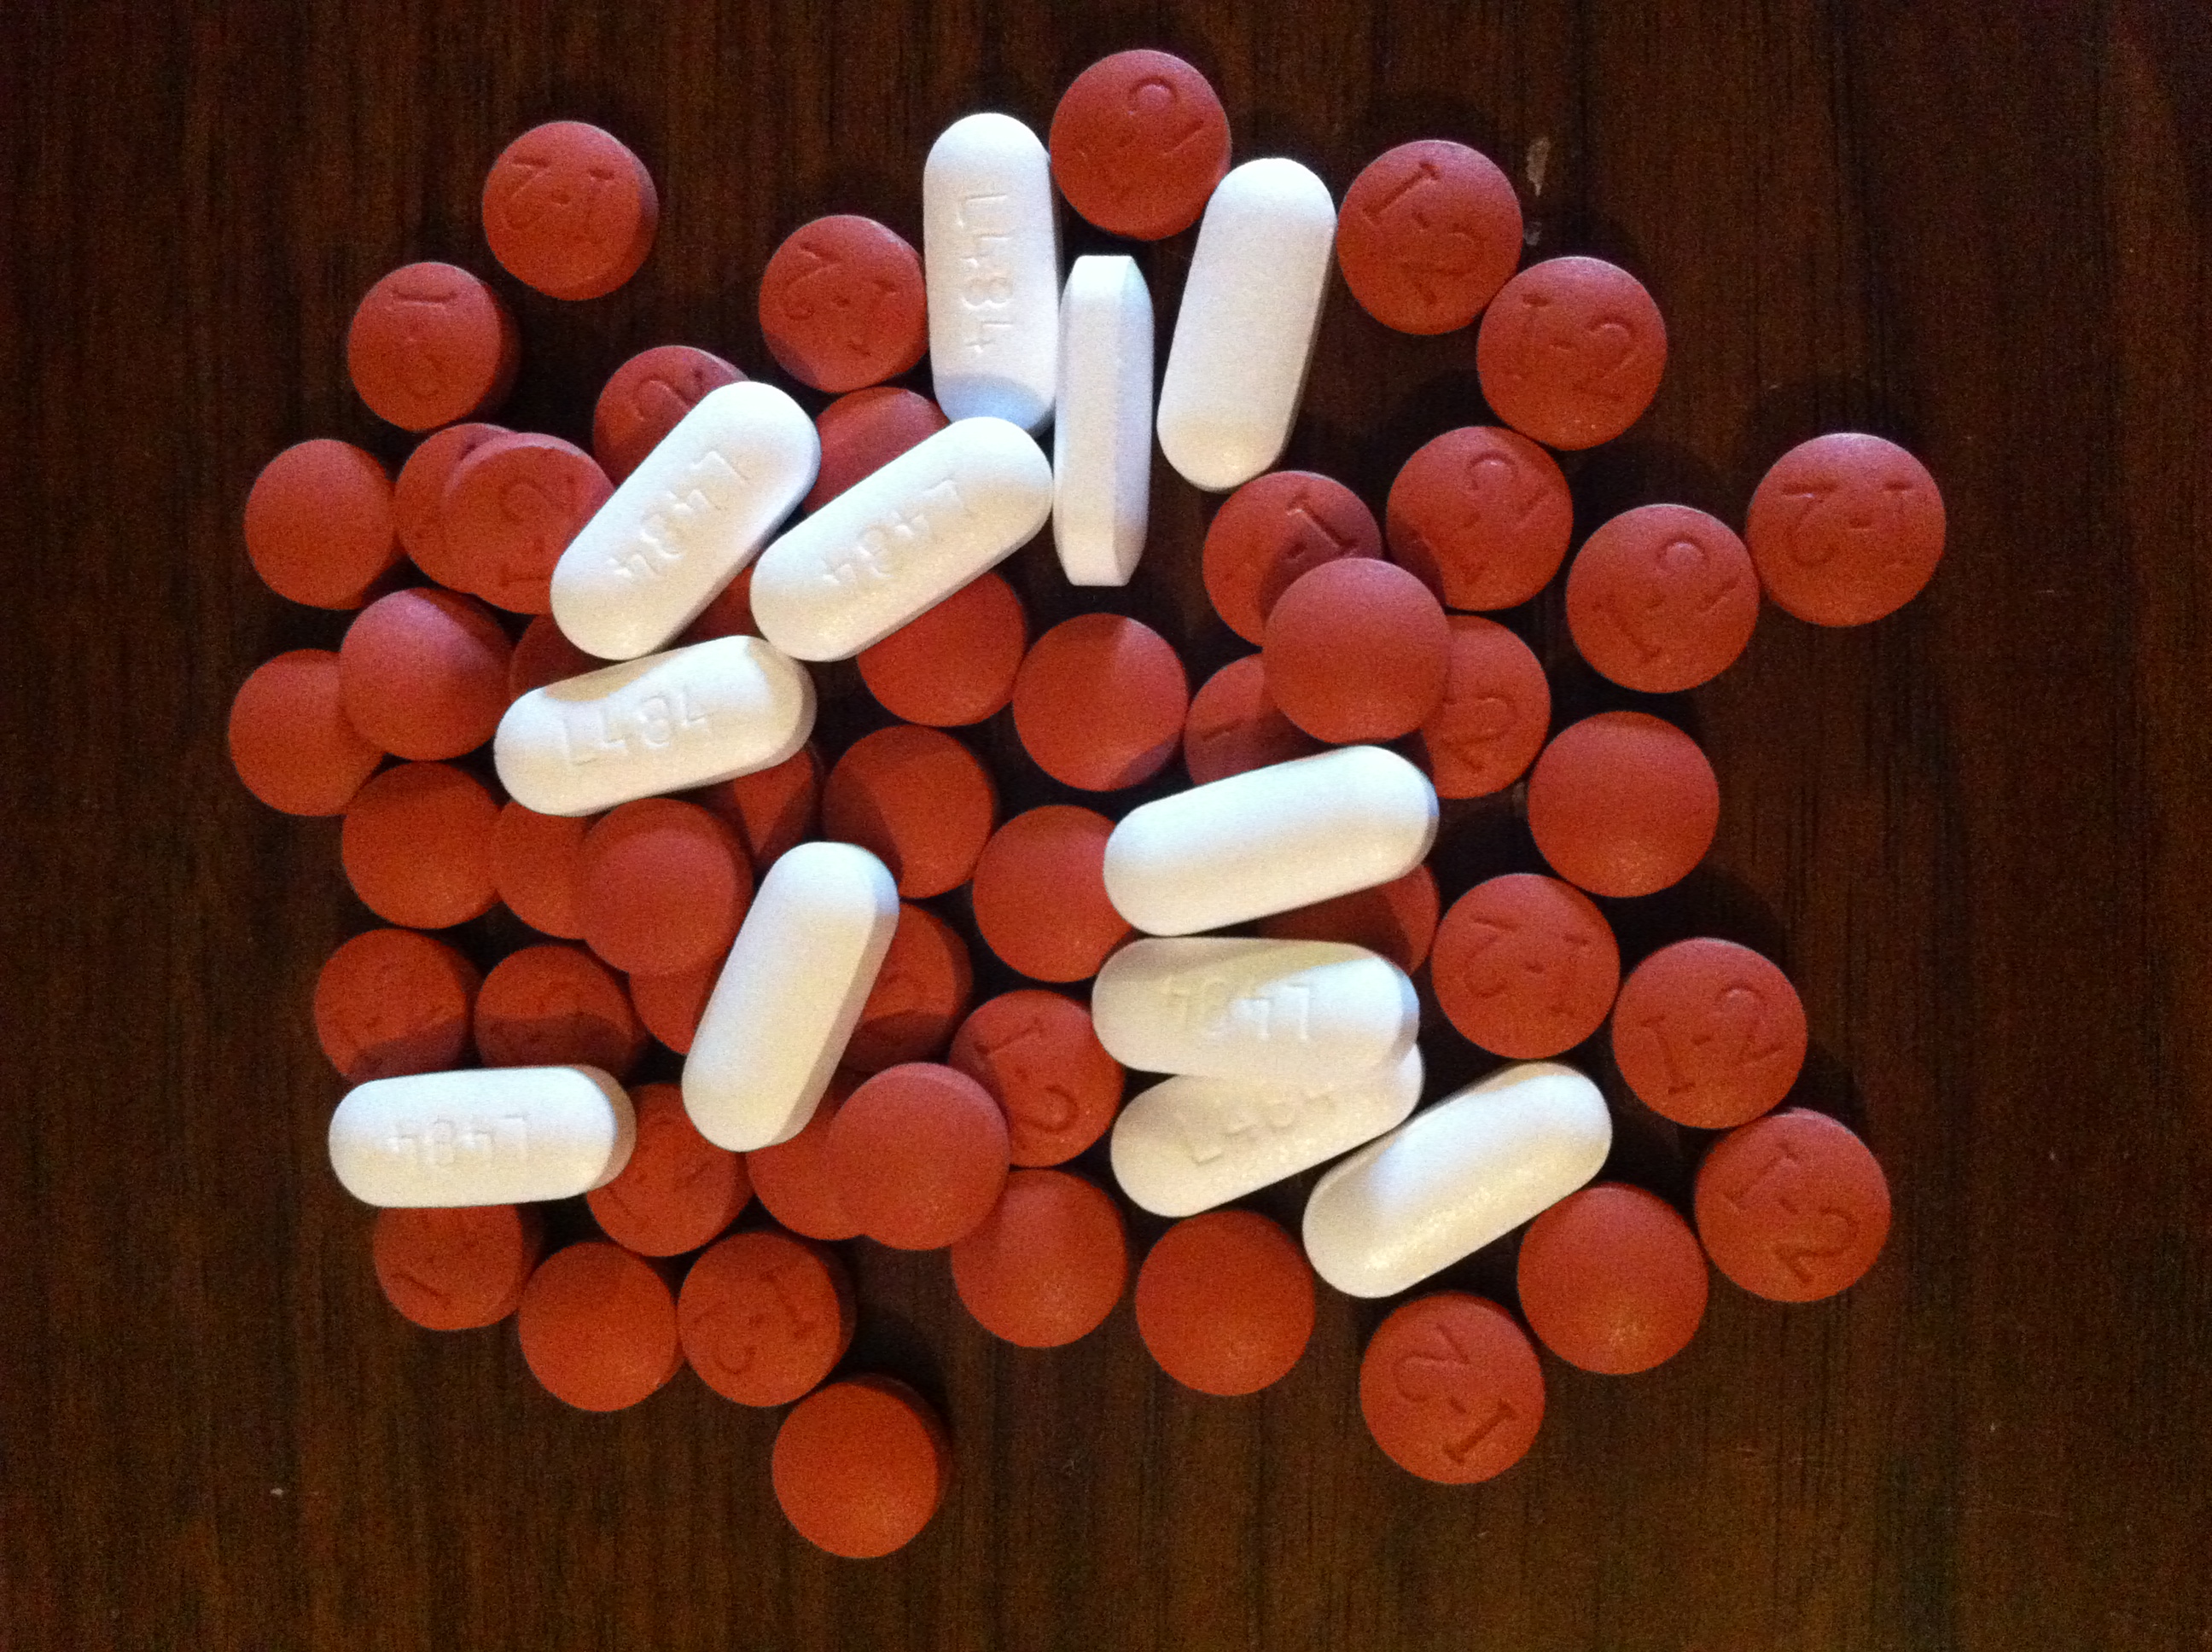 Ibuprofén és paracetamol tartalmú gyógyszerek